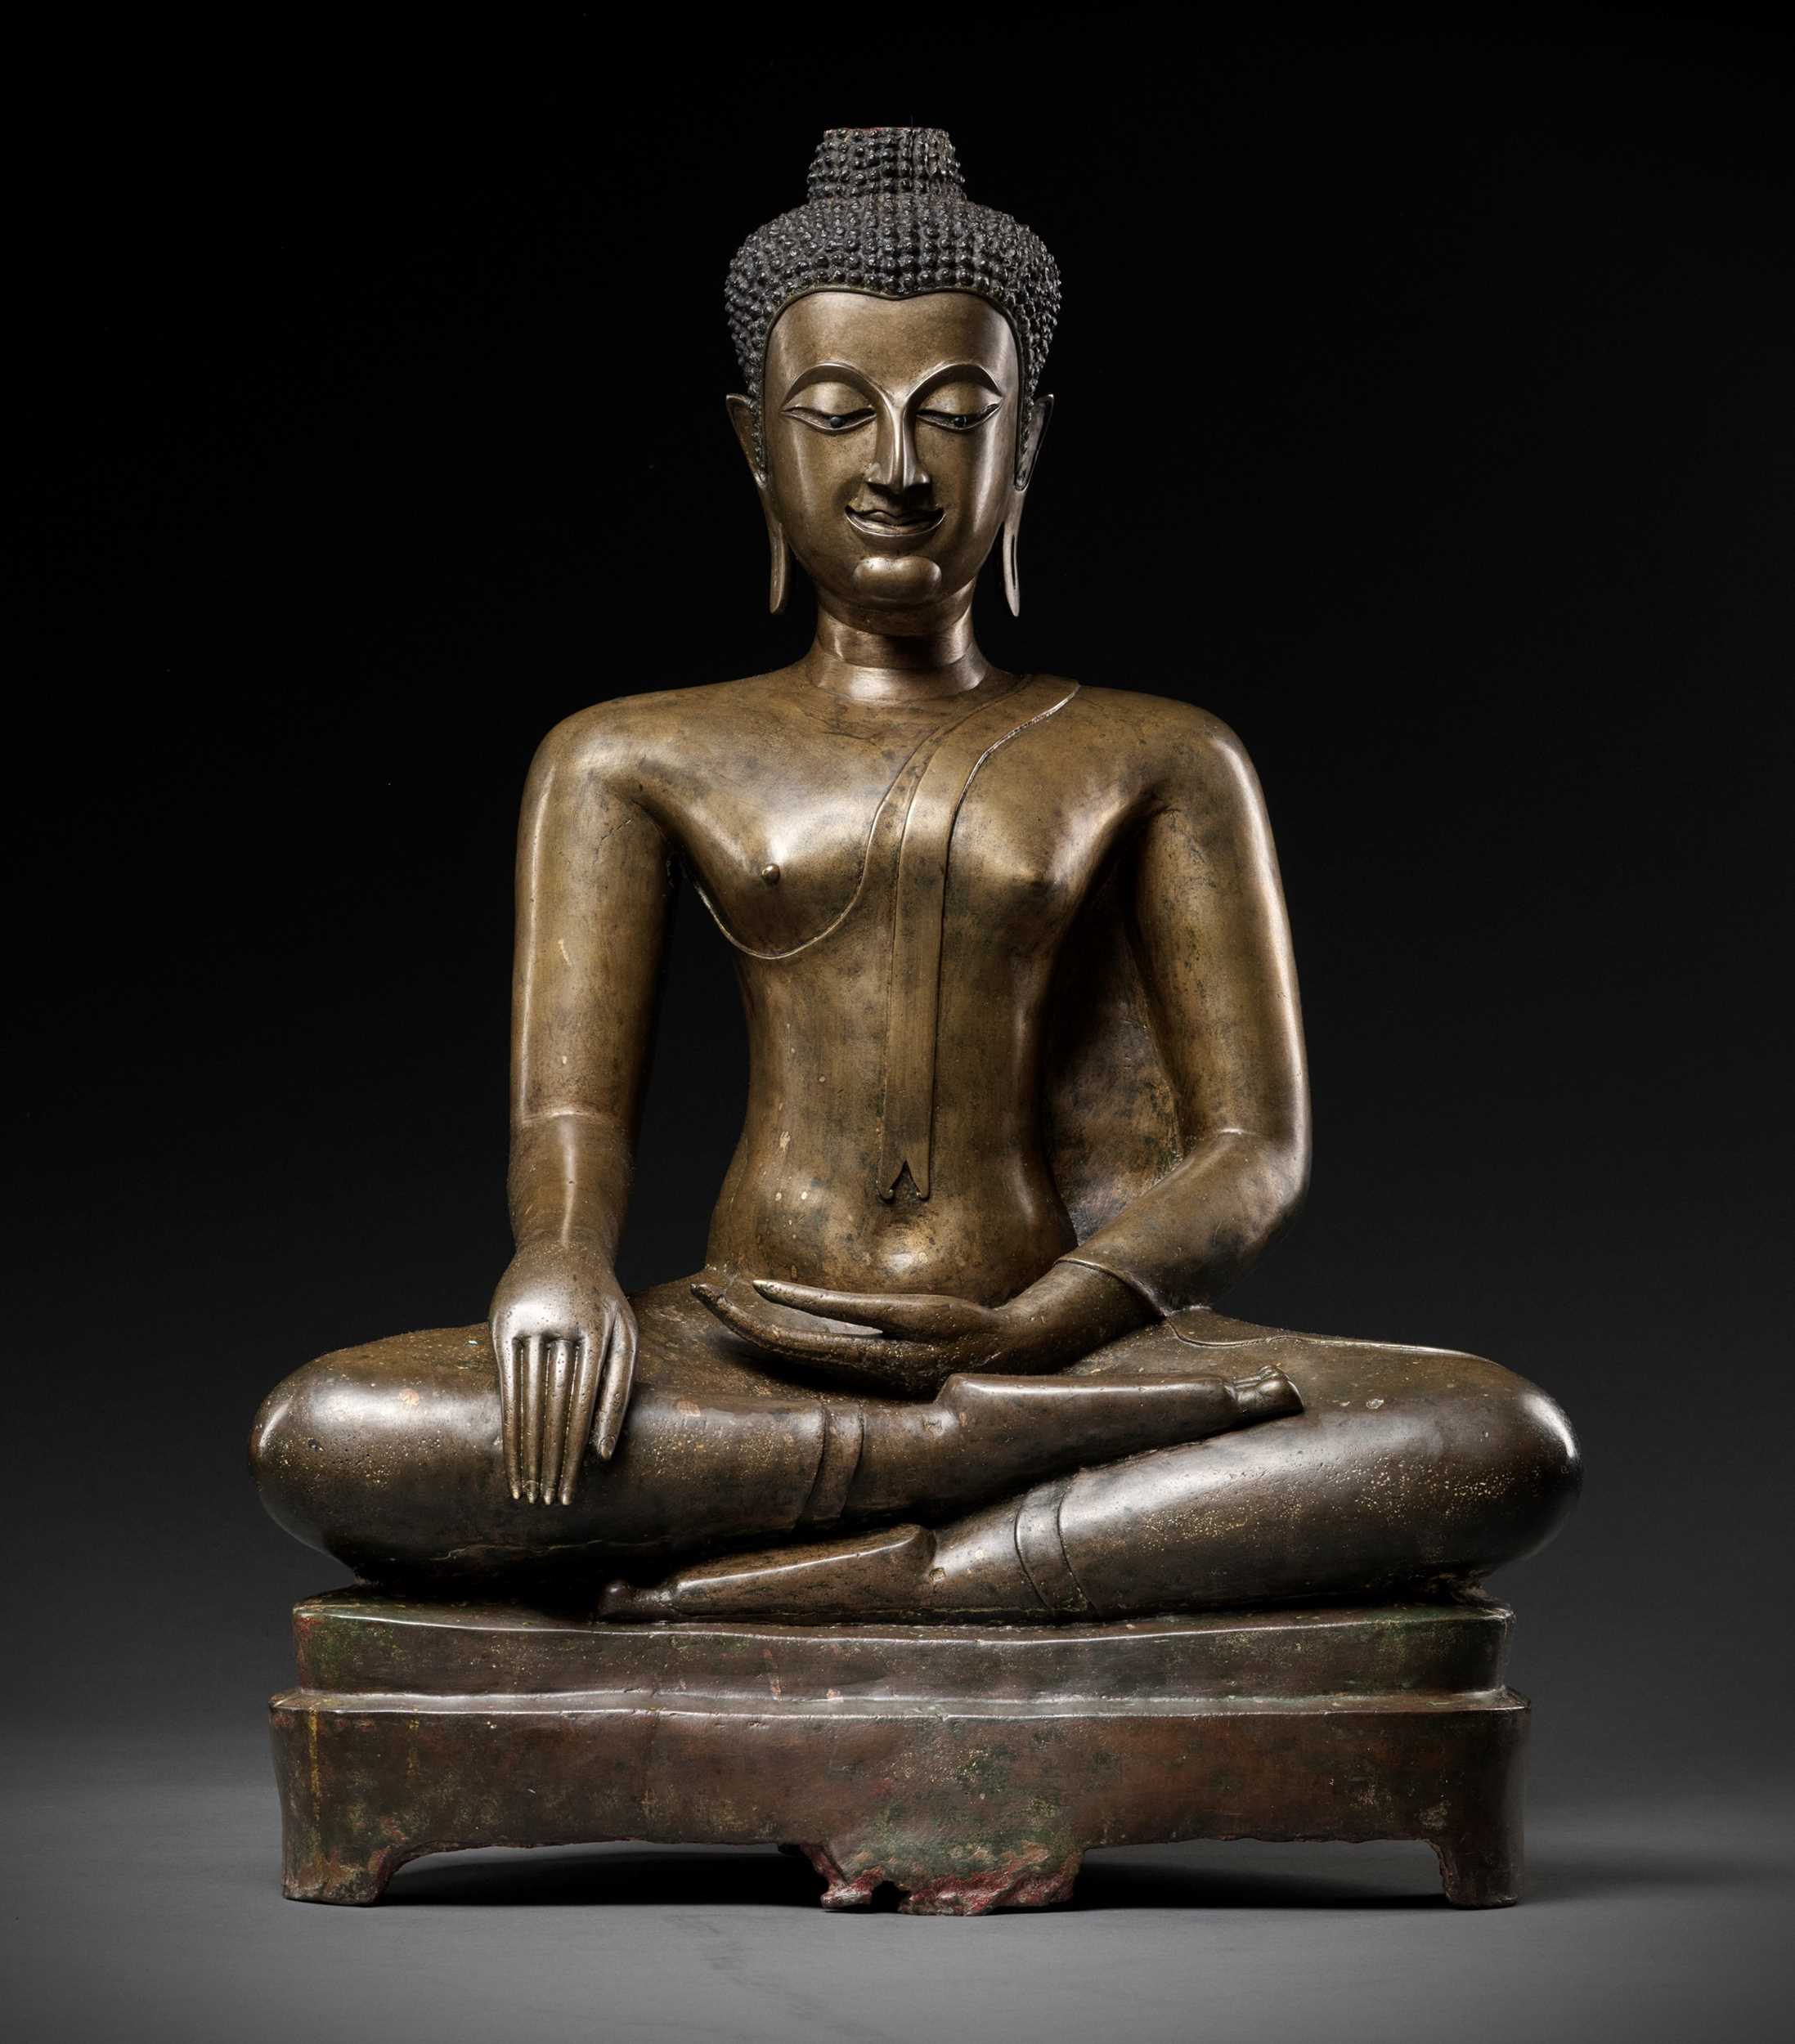 Lot 578 - A LARGE BRONZE FIGURE OF BUDDHA SHAKYAMUNI, AYUTTHAYA KINGDOM